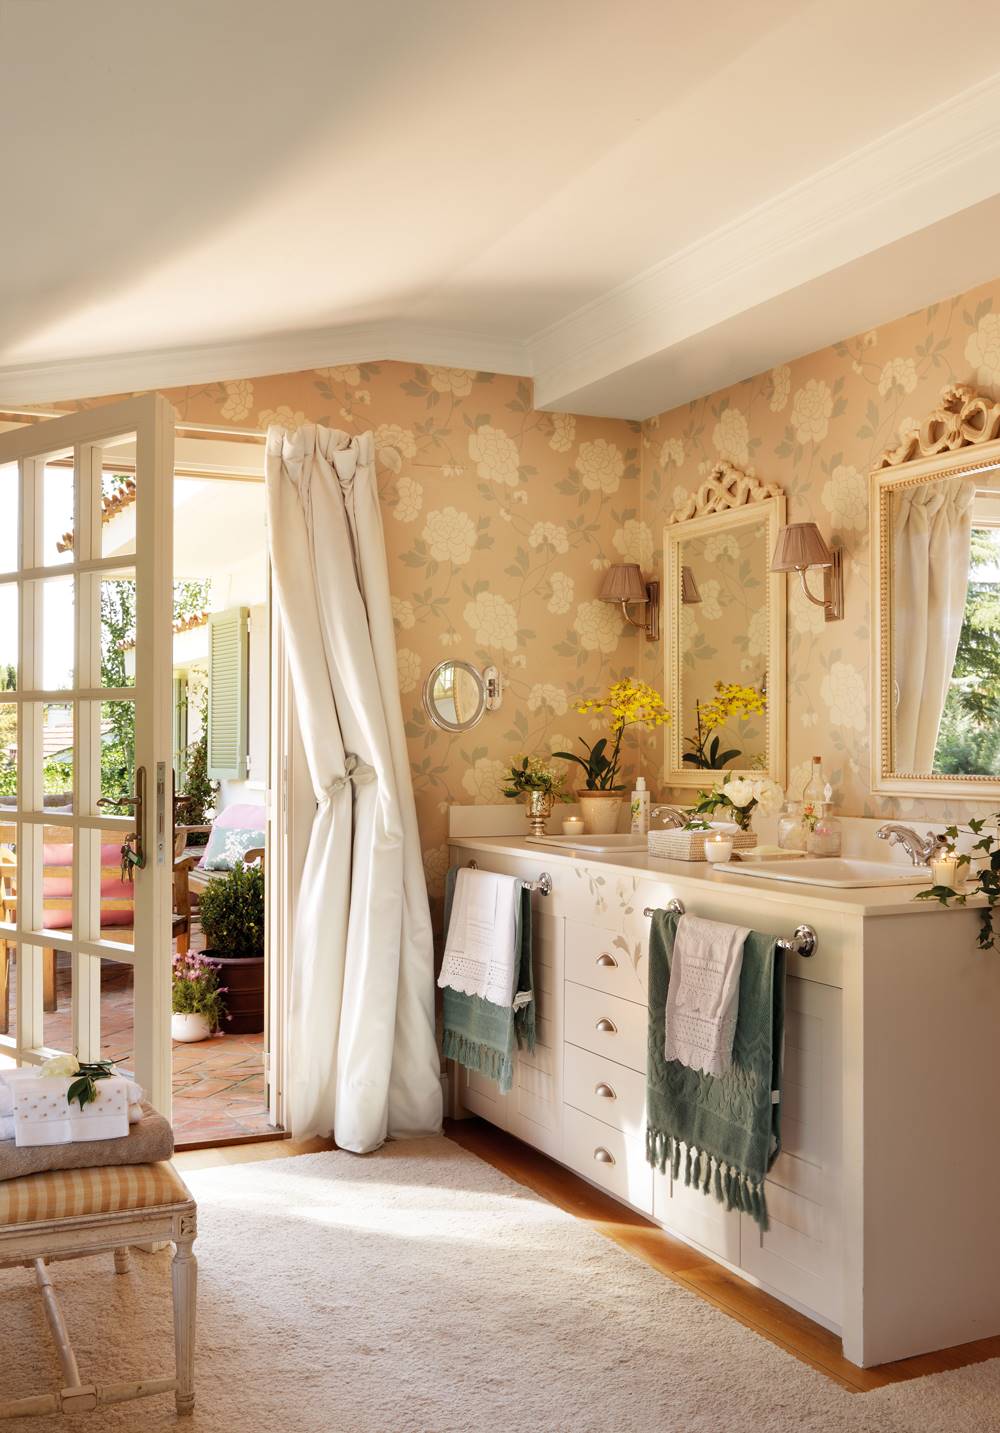 Baño clásico con papel pintado floral y mueble de baño blanco. 